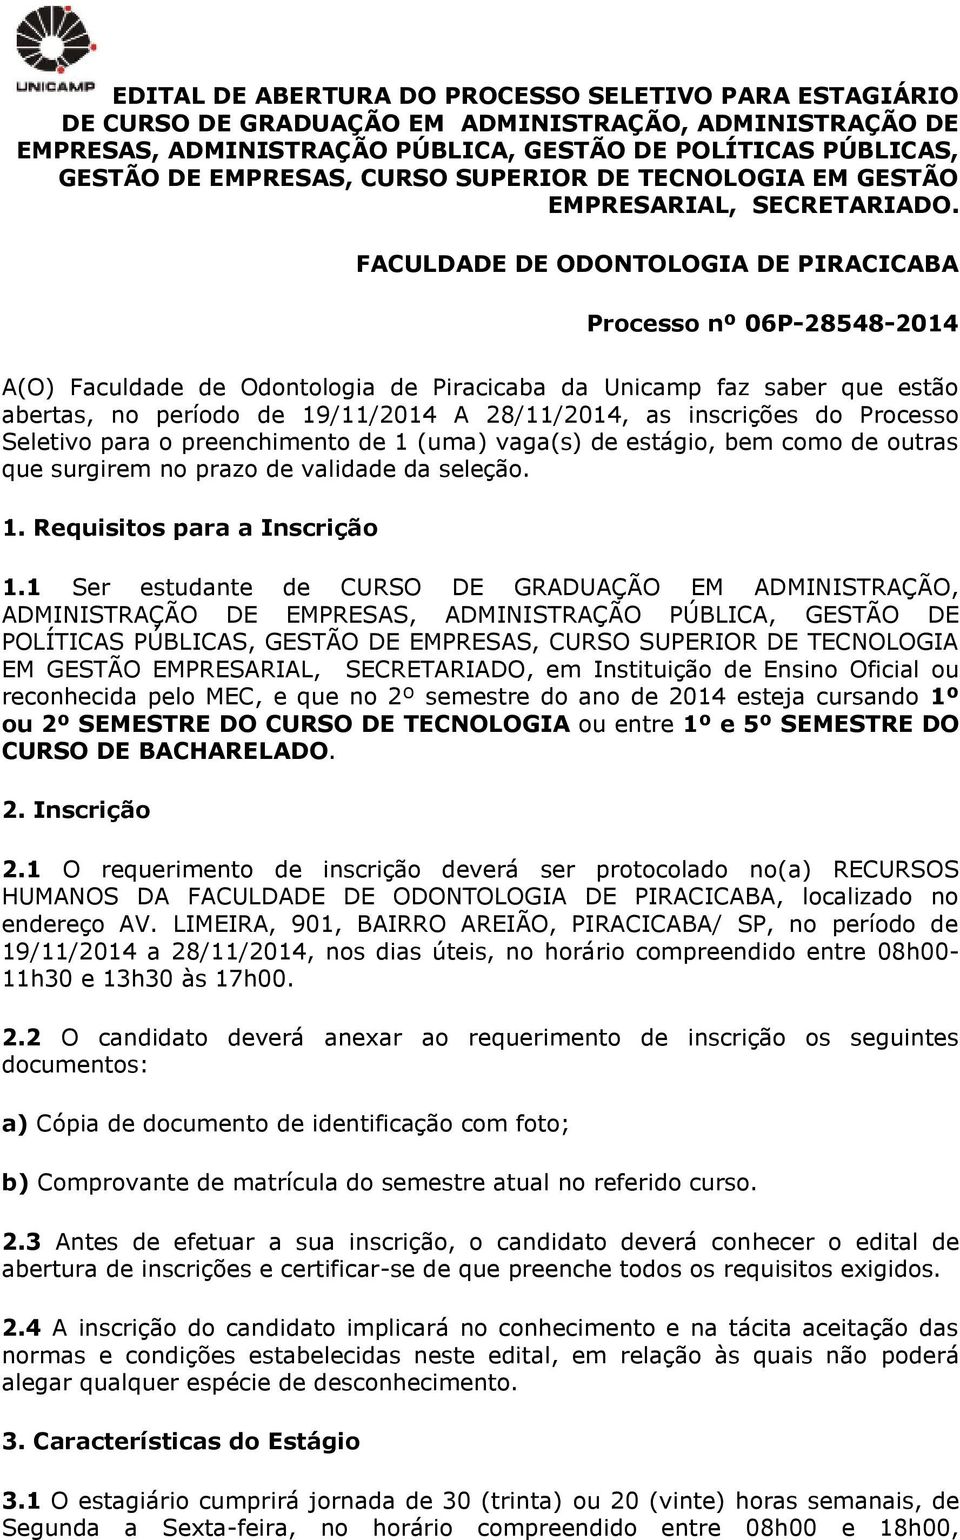 FACULDADE DE ODONTOLOGIA DE PIRACICABA Processo nº 06P-28548-2014 A(O) Faculdade de Odontologia de Piracicaba da Unicamp faz saber que estão abertas, no período de 19/11/2014 A 28/11/2014, as